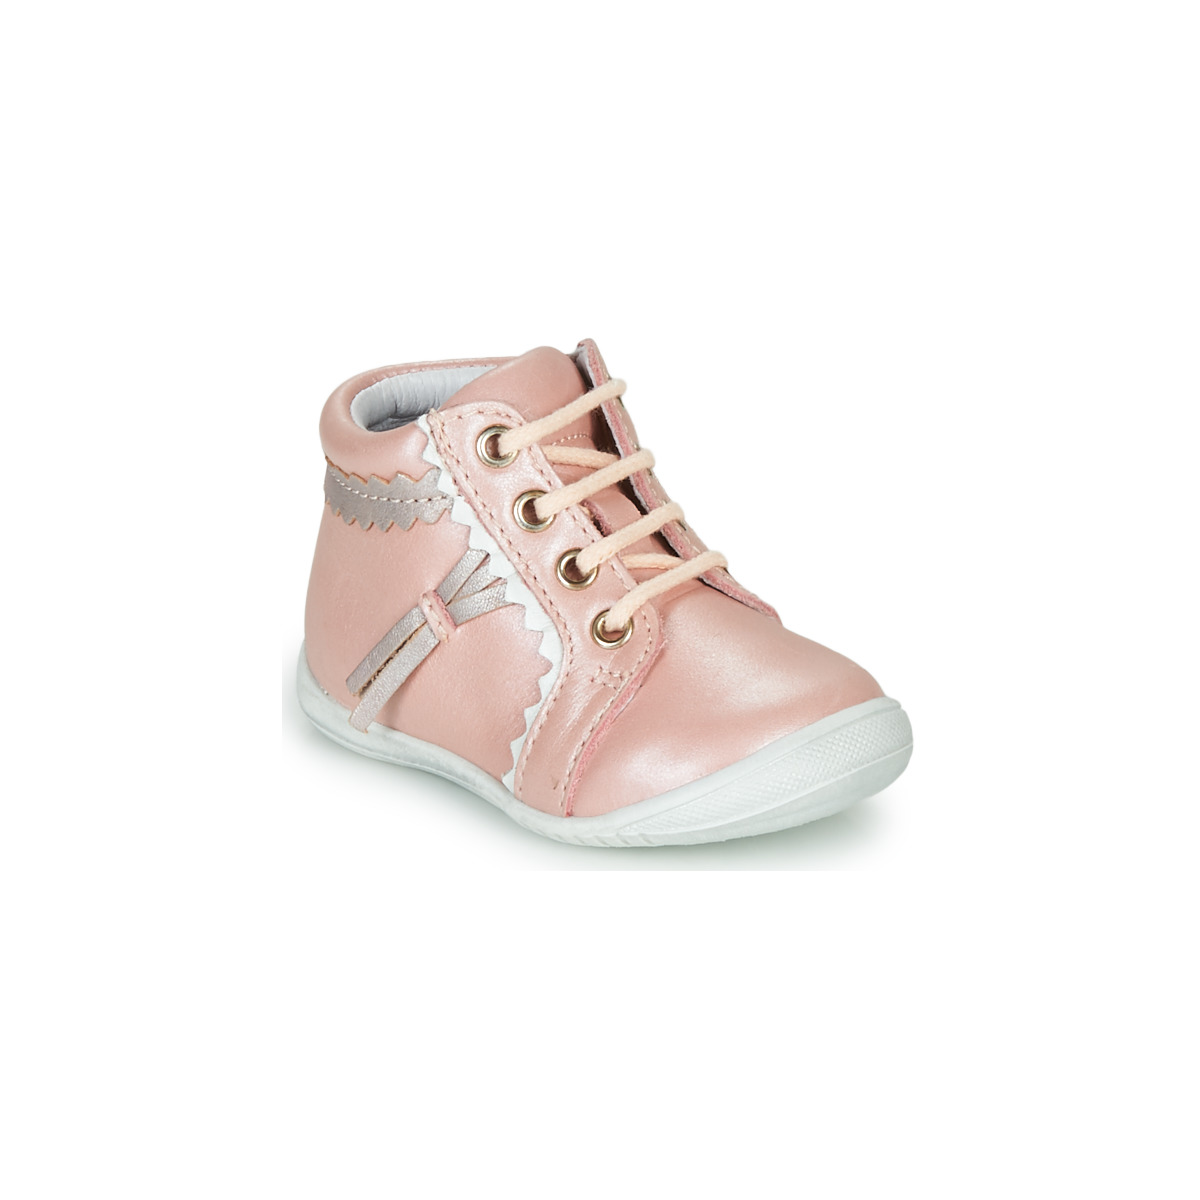 Παπούτσια Κορίτσι Ψηλά Sneakers GBB ACINTA Ροζ